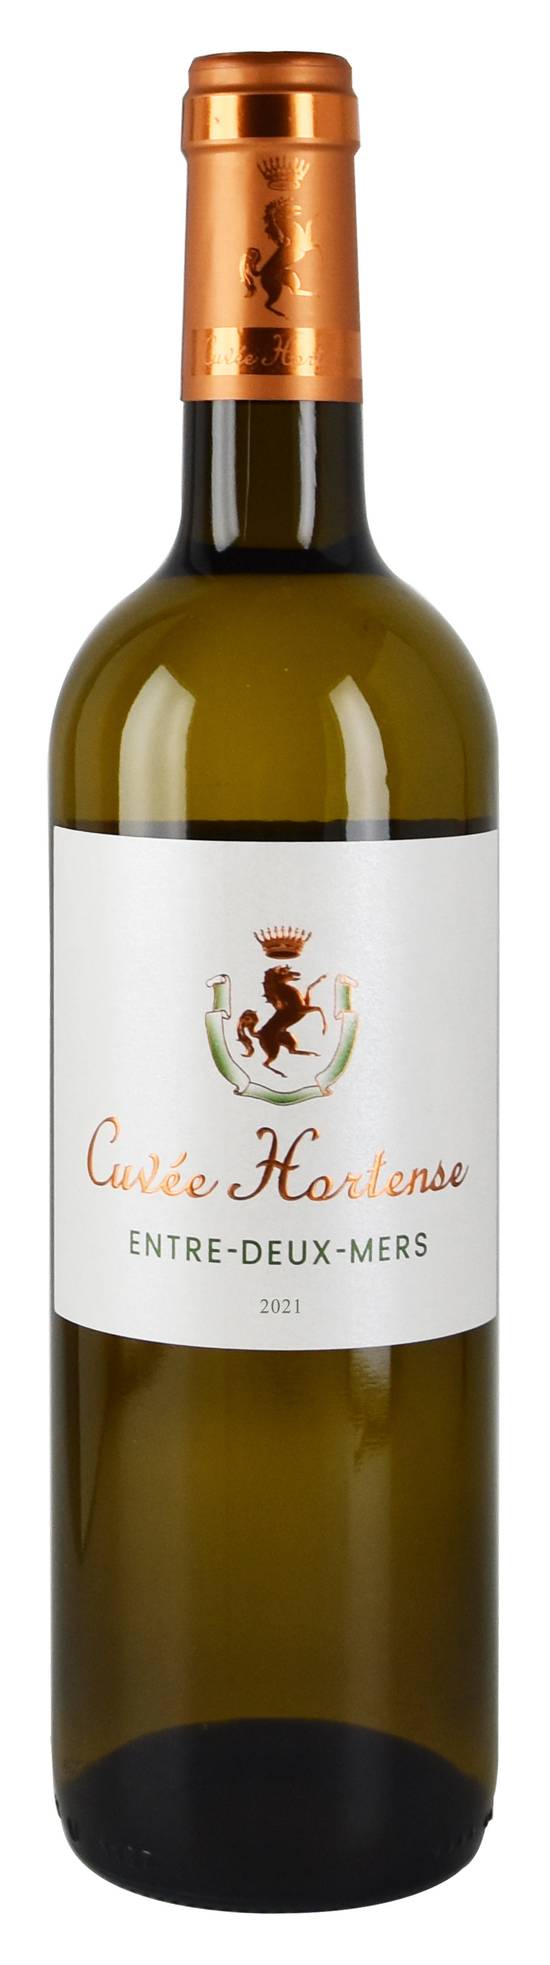 Cuvee Hortense - Entre deux mers 2021 (750 ml)